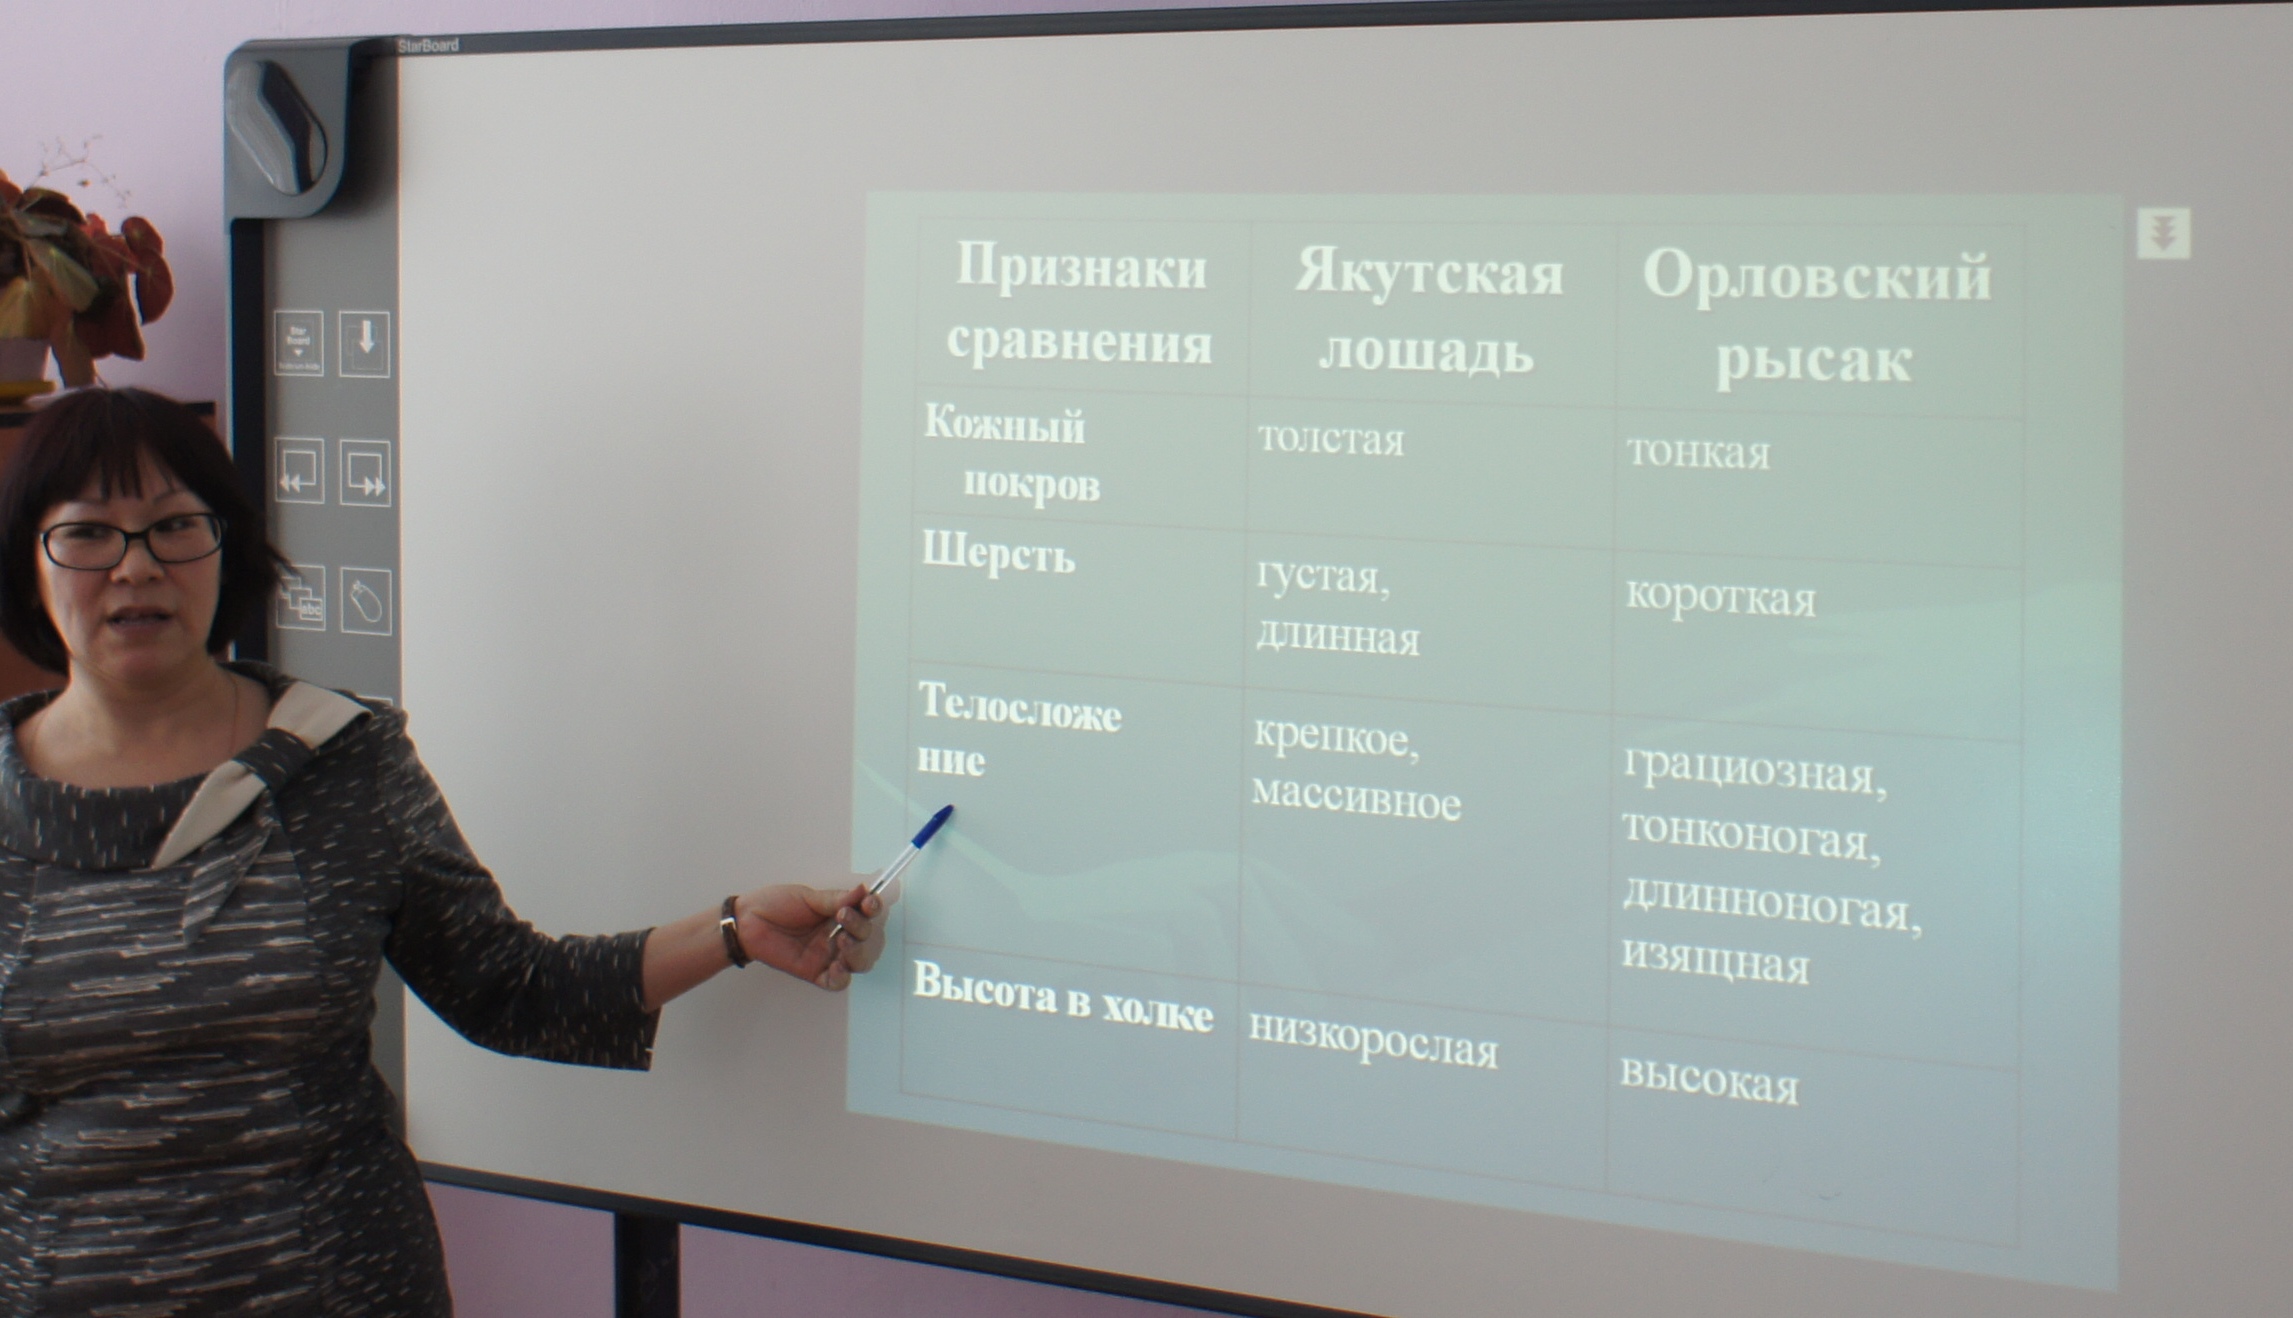 Конспект урока по якутской национальной культуре на тему Якутская лошадь от истоков к современности (5 класс)